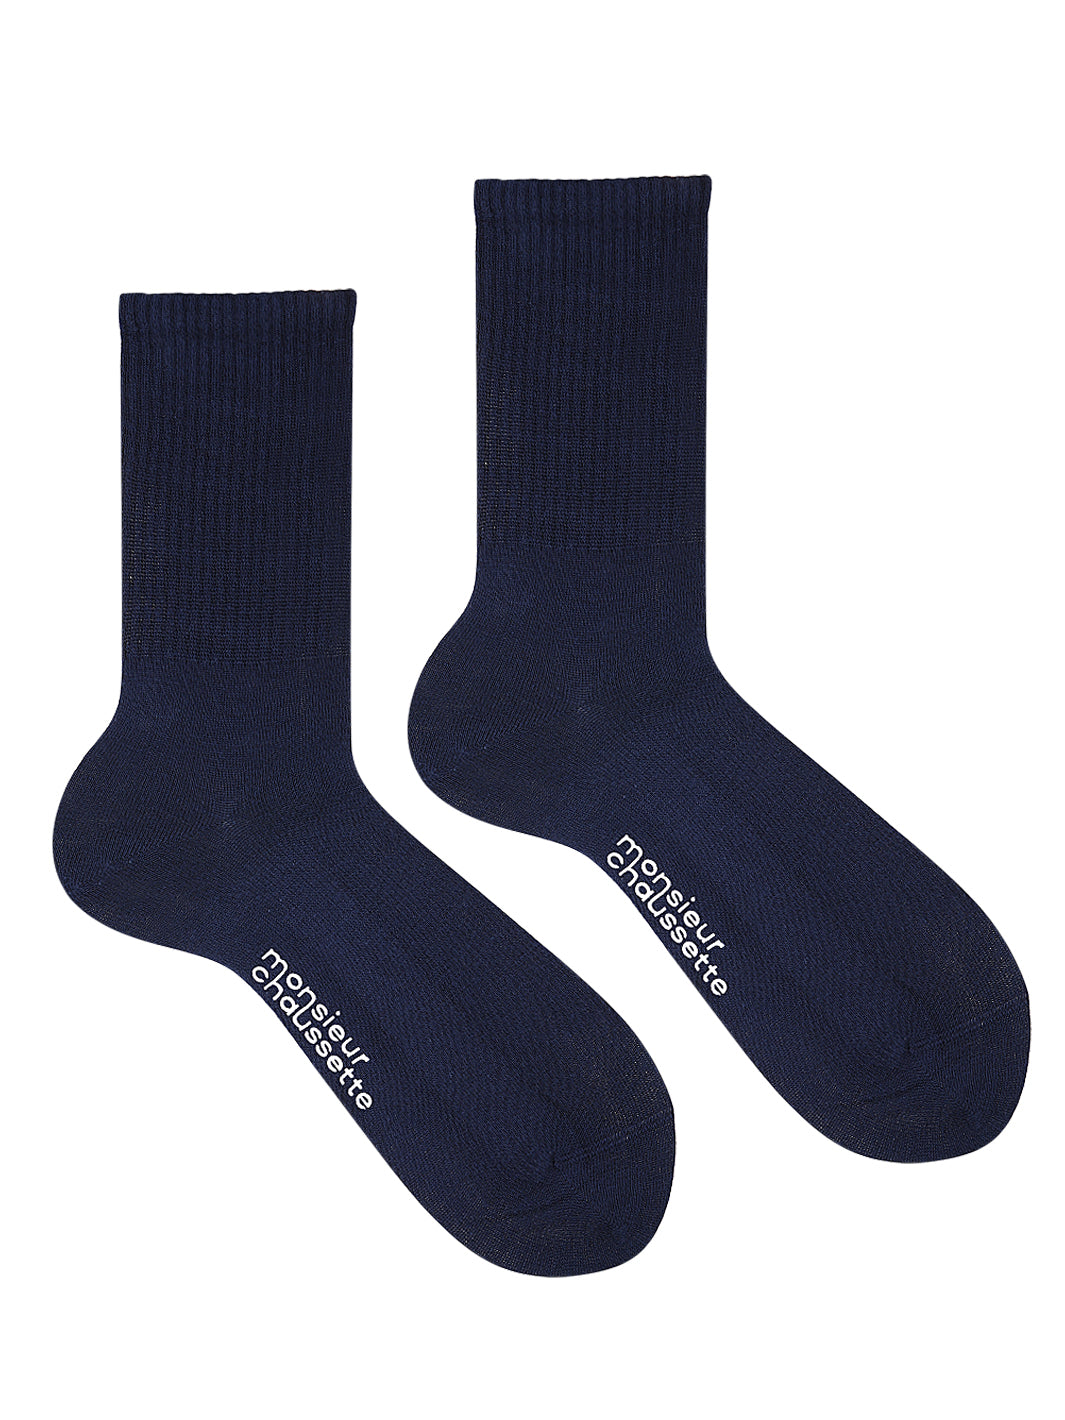 Unıcolor-Cloudy Oxford Blue Long Socks